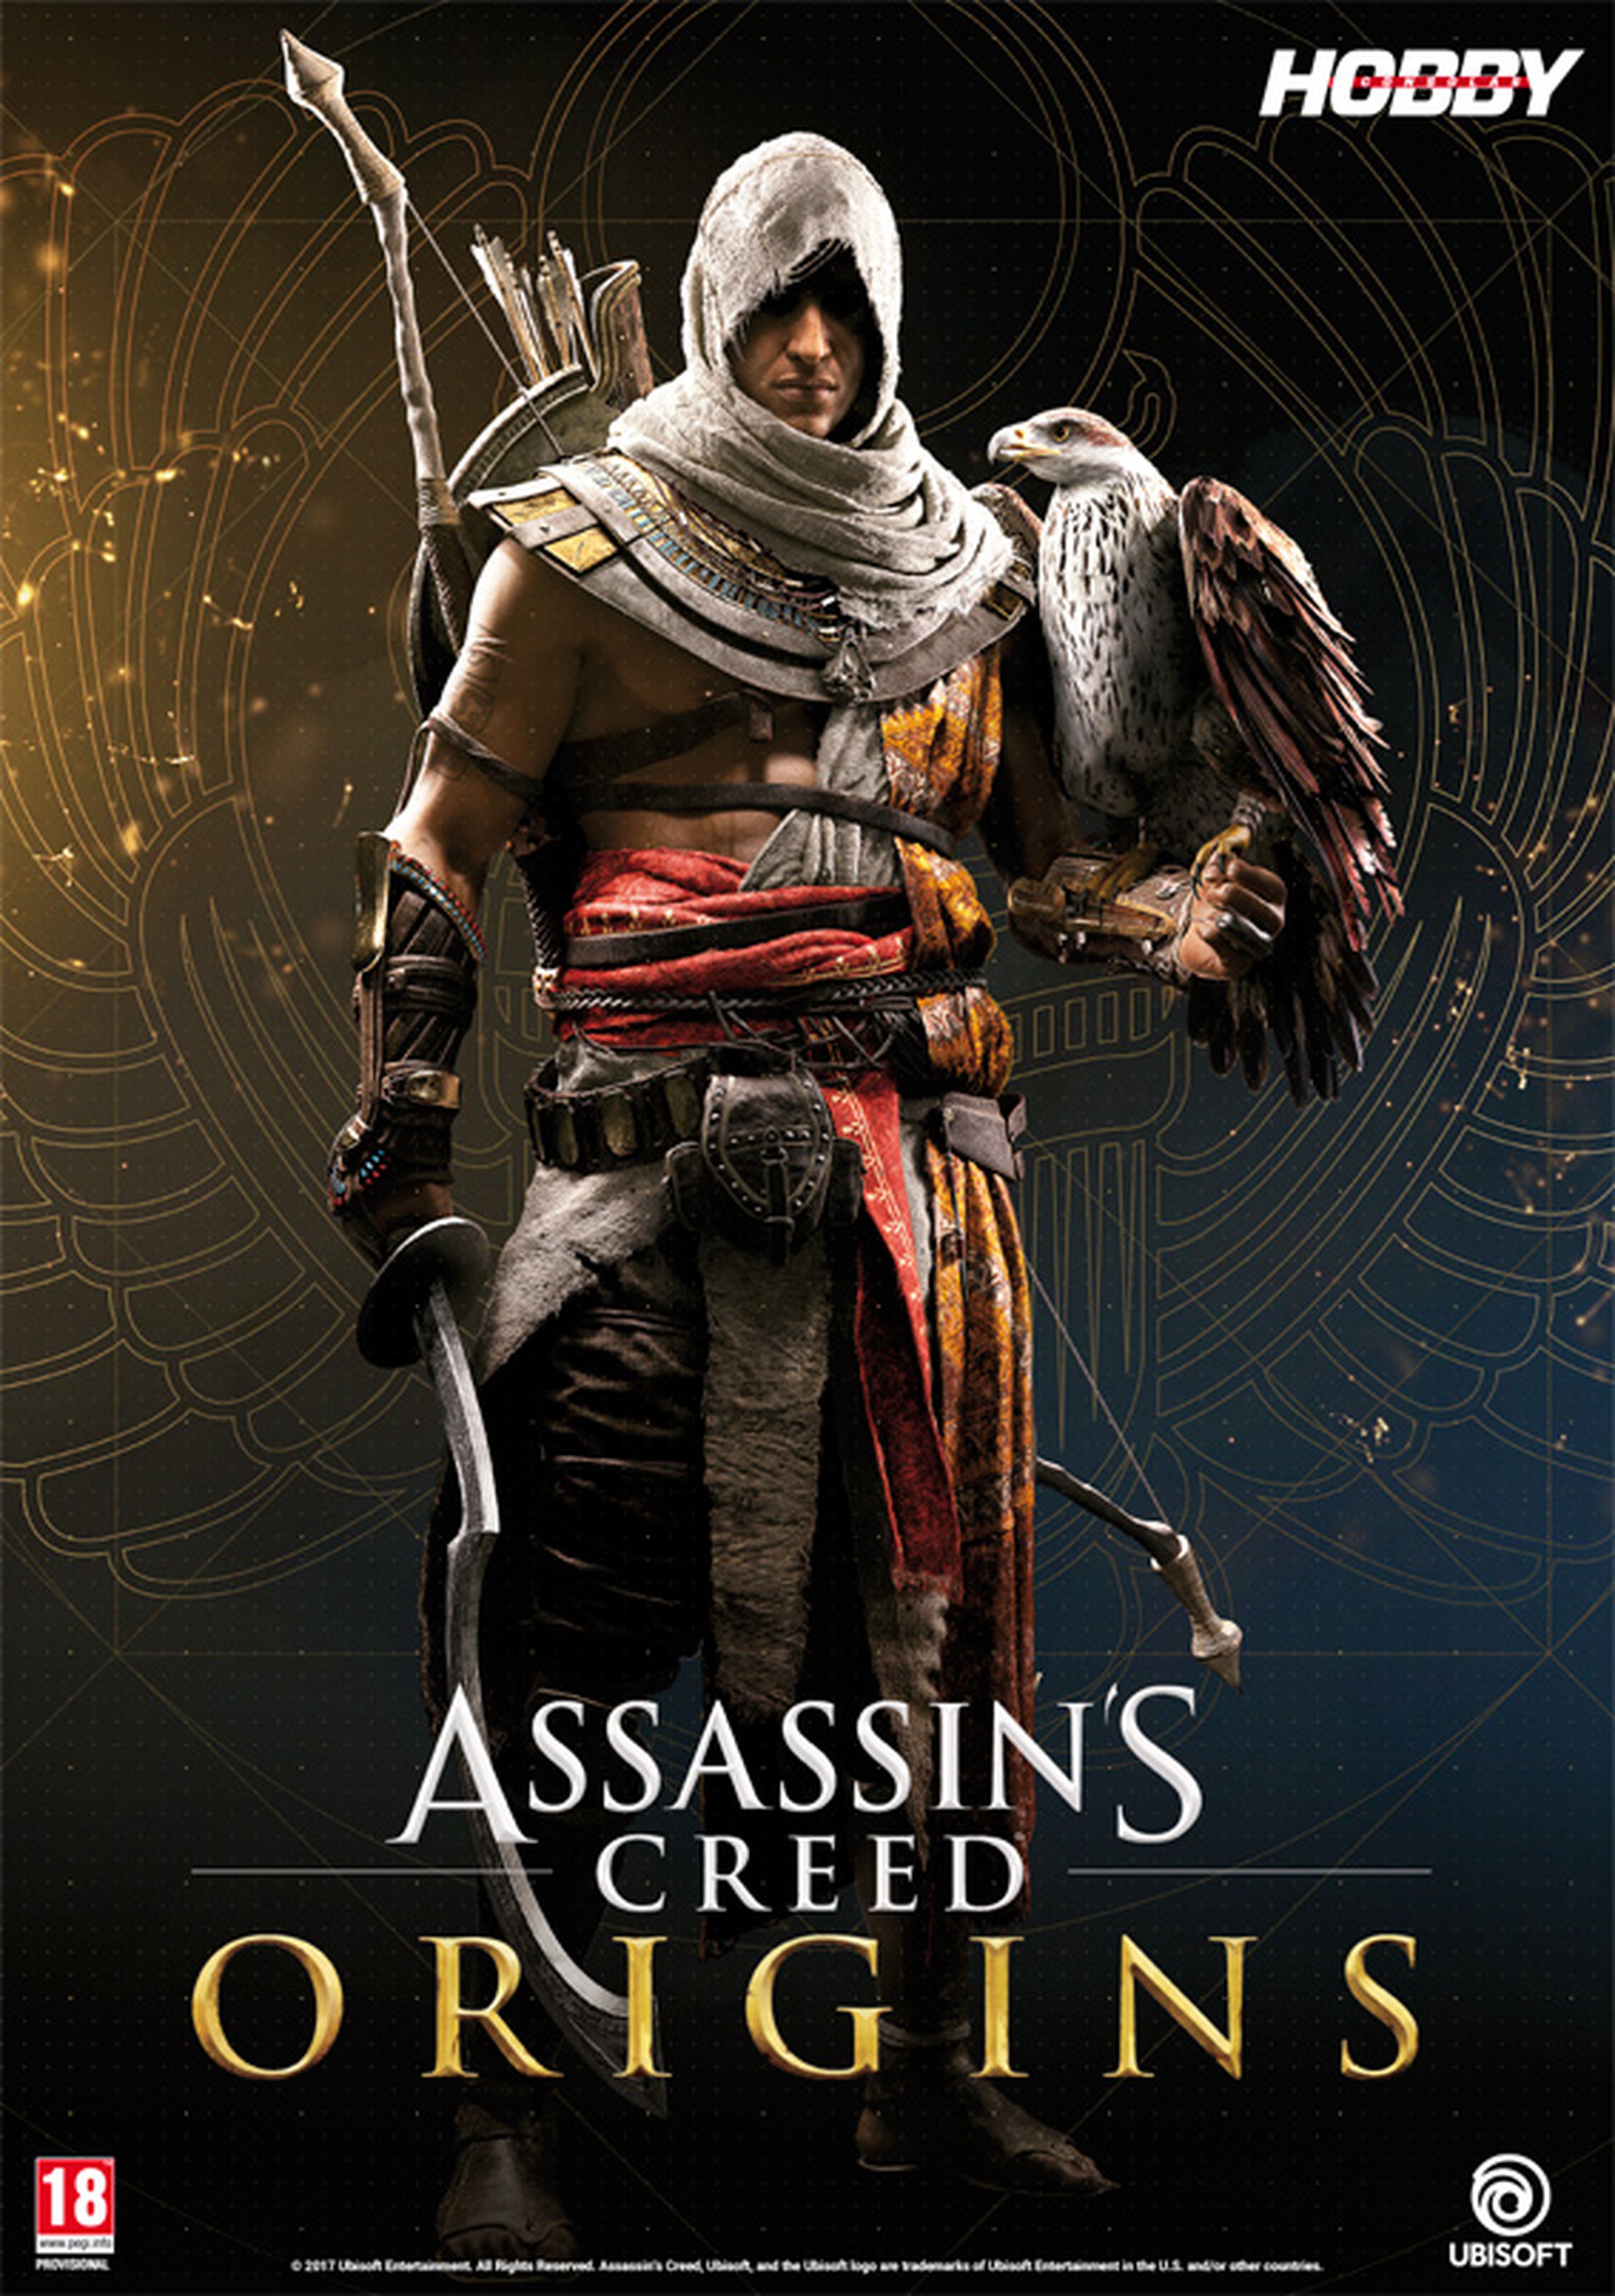 Hobby Consolas 315, a la venta con pósters de Metroid y Assassin's Creed